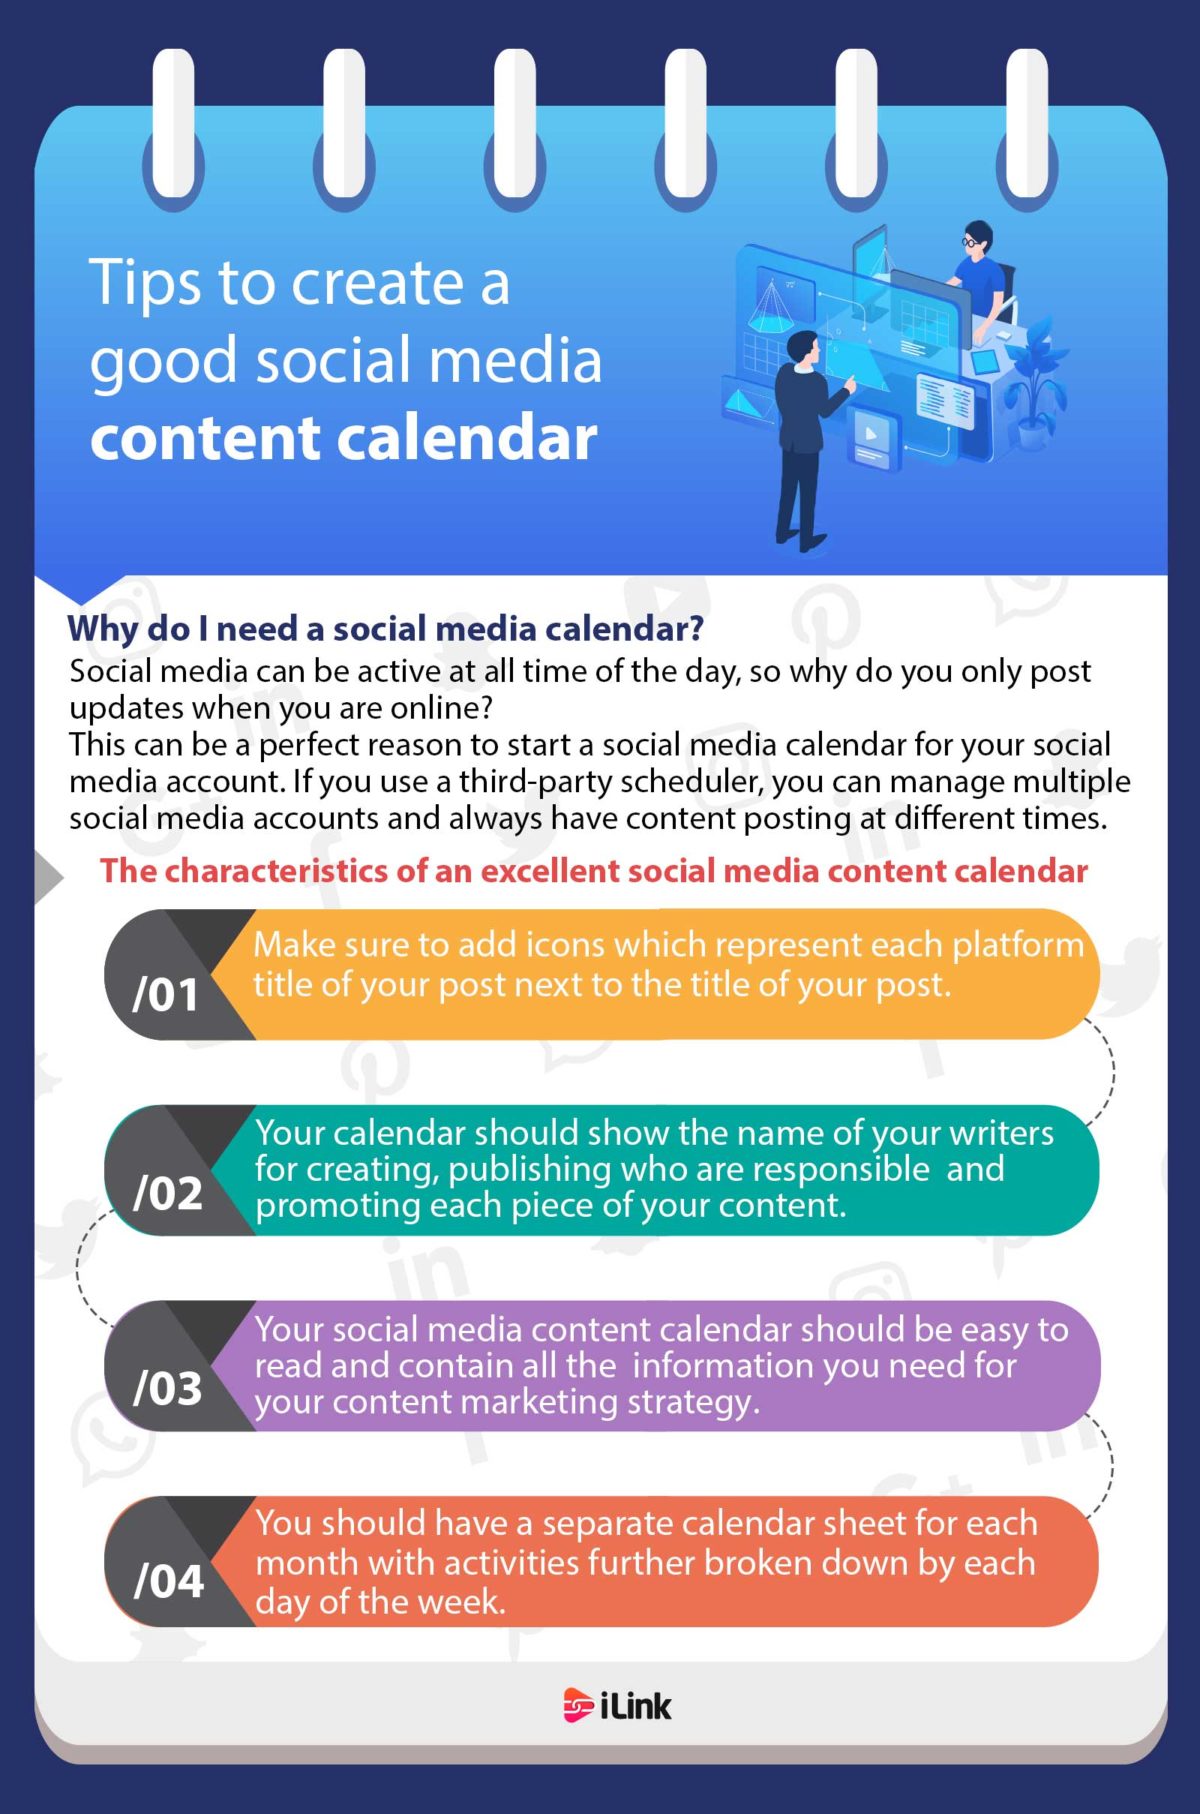 TIPS TO CREATE A GOOD SOCIAL MEDIA CONTENT CALENDAR